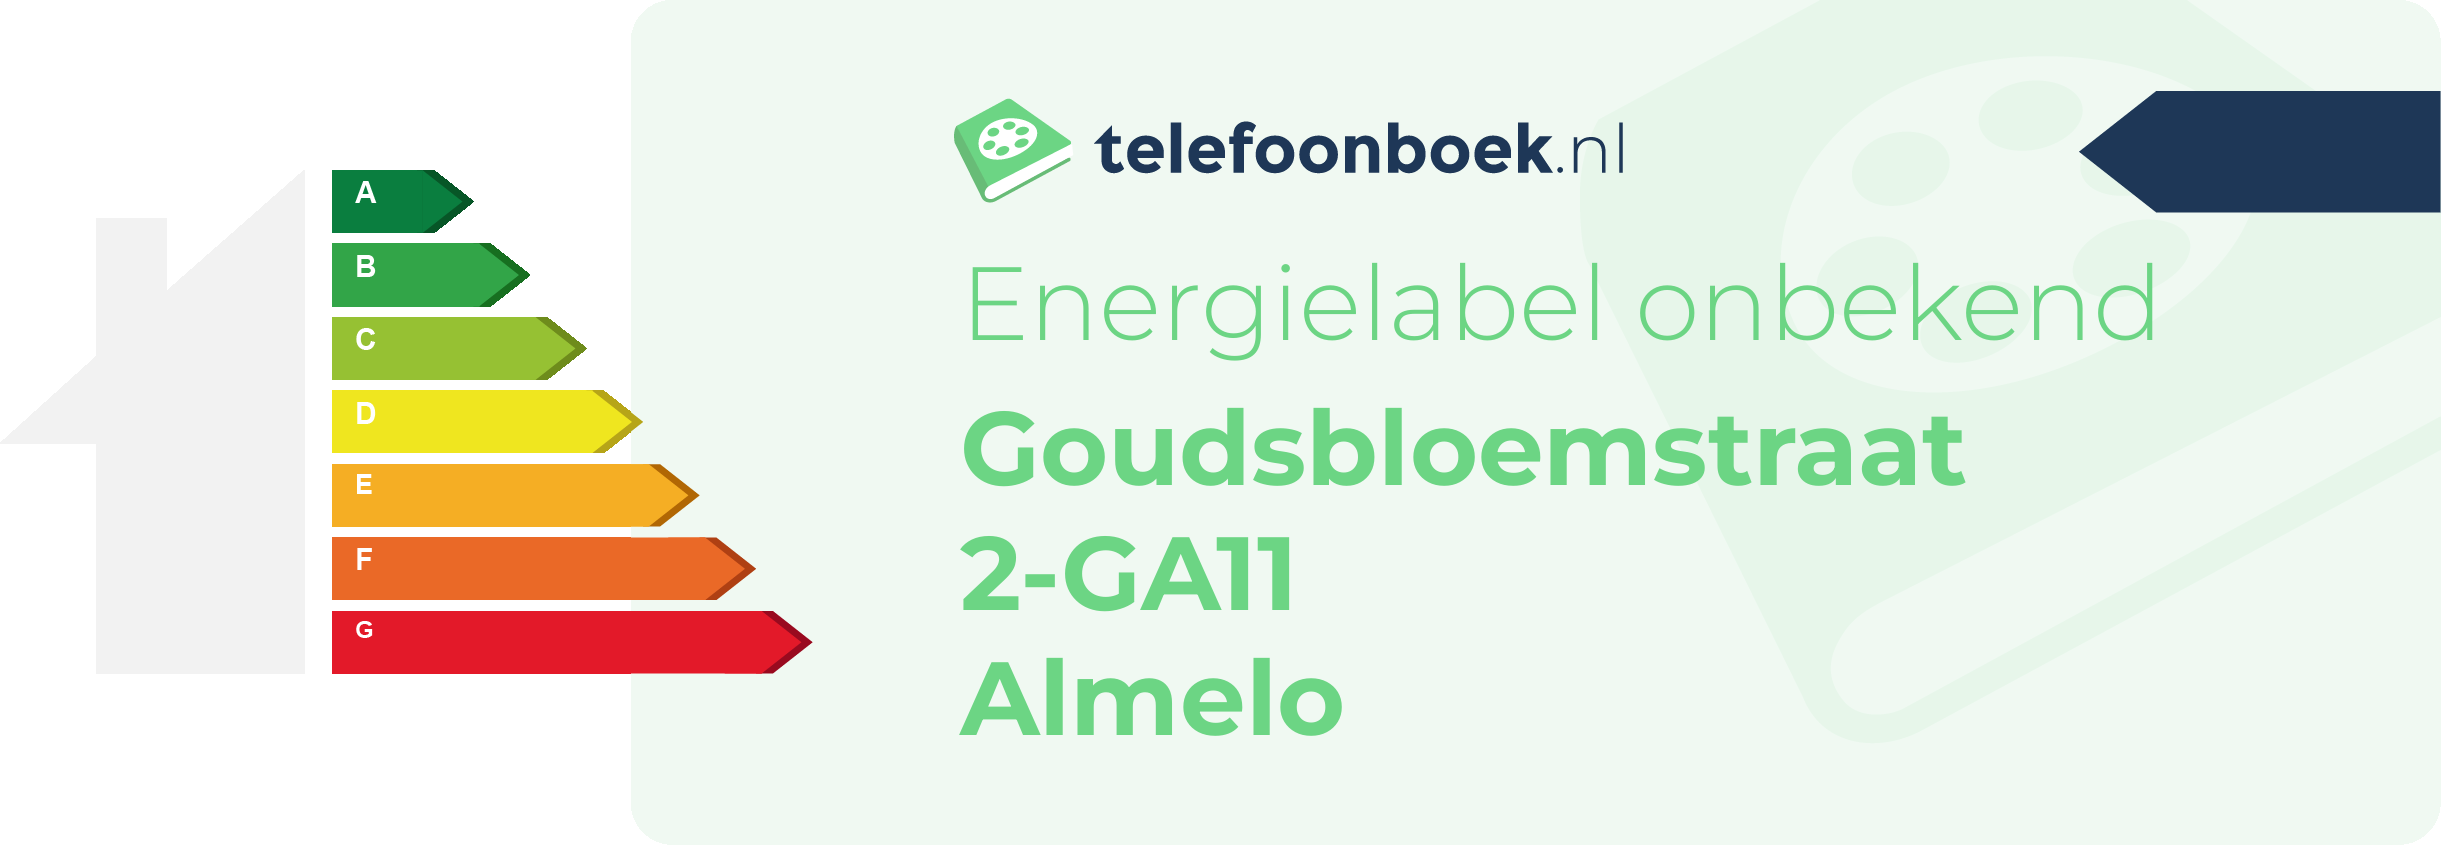 Energielabel Goudsbloemstraat 2-GA11 Almelo